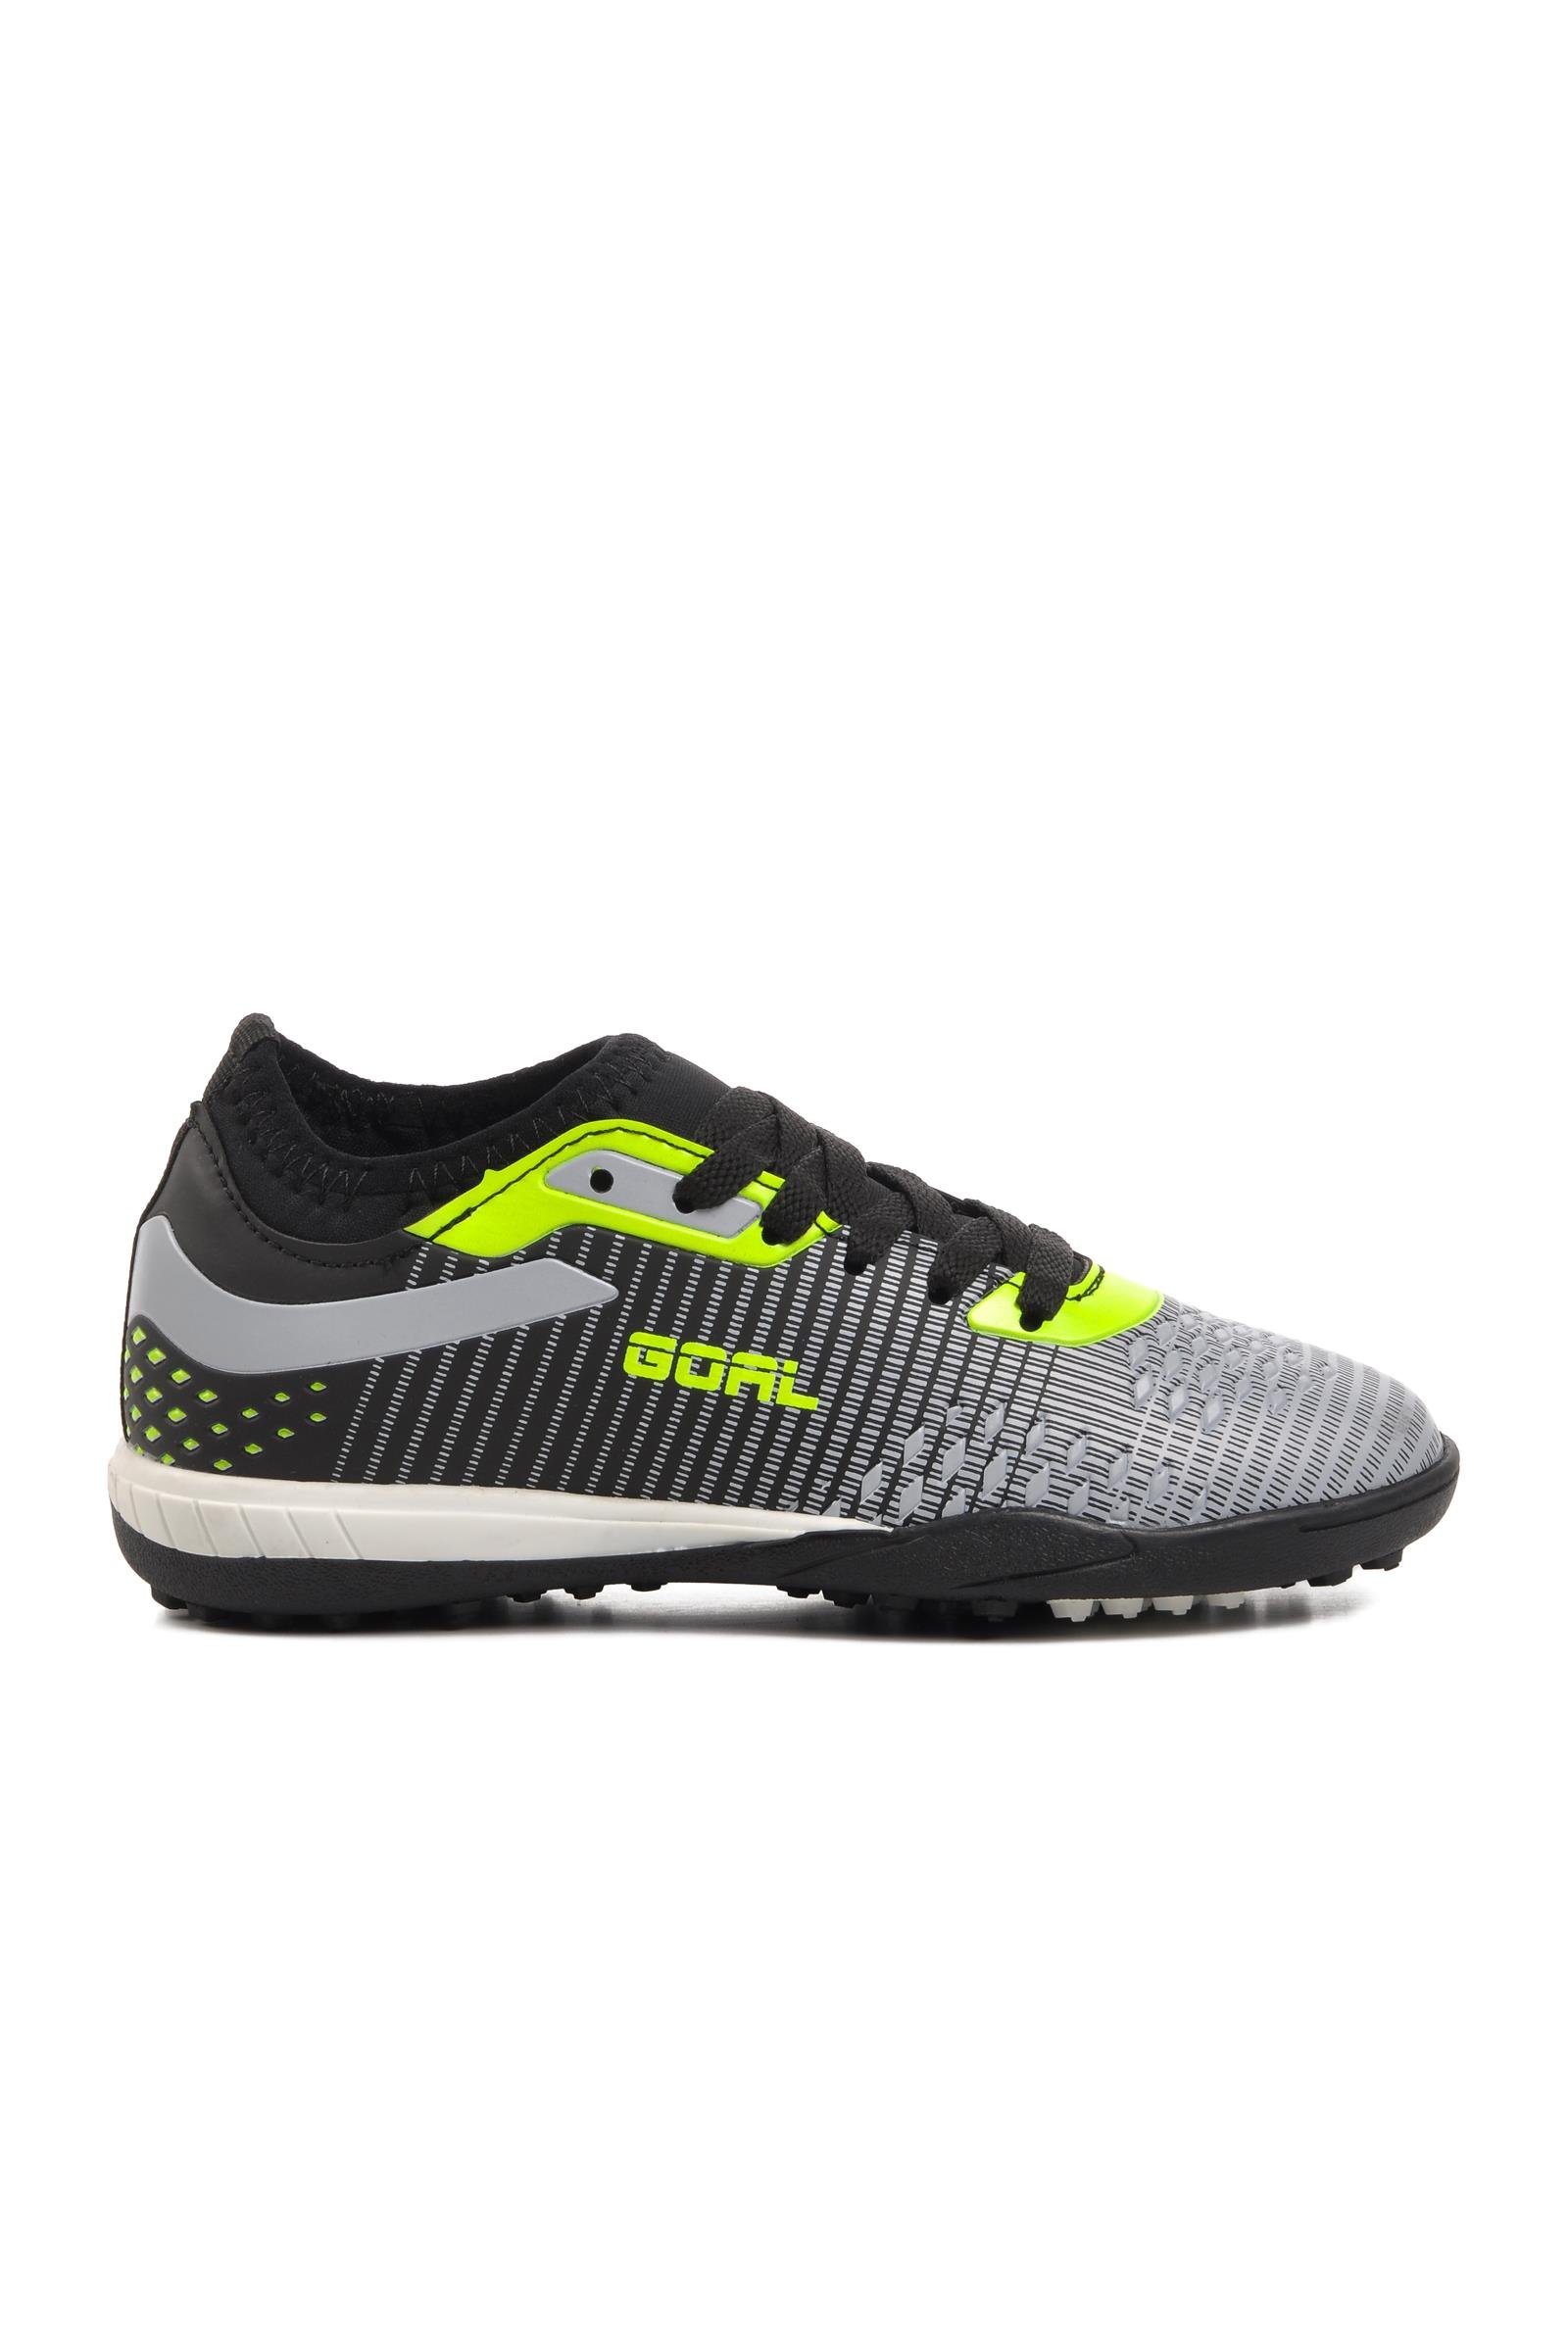 Ayakmod 1011-F Siyah-Gri-Neon Sarı Çocuk Halı Saha Ayakkabısı - Ayakmod